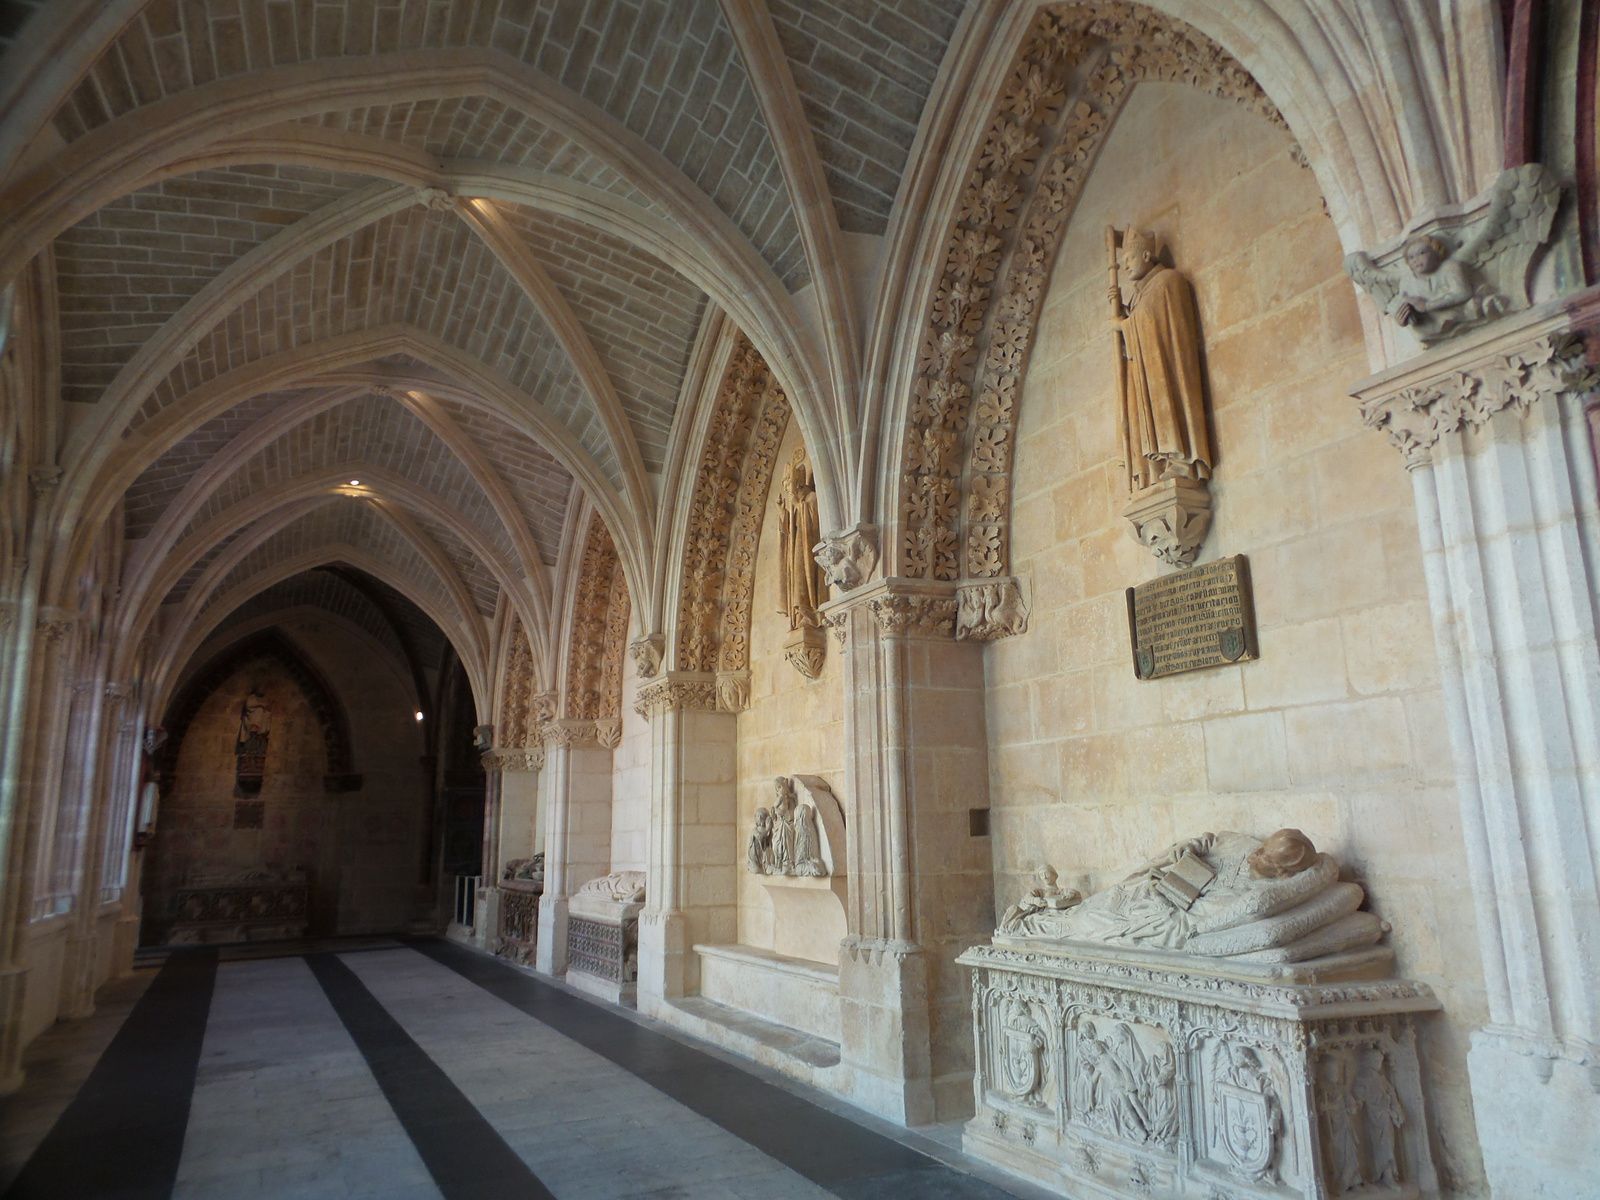 La cathédrale de Burgos mérite vraiment une visite, un vrai bijou!